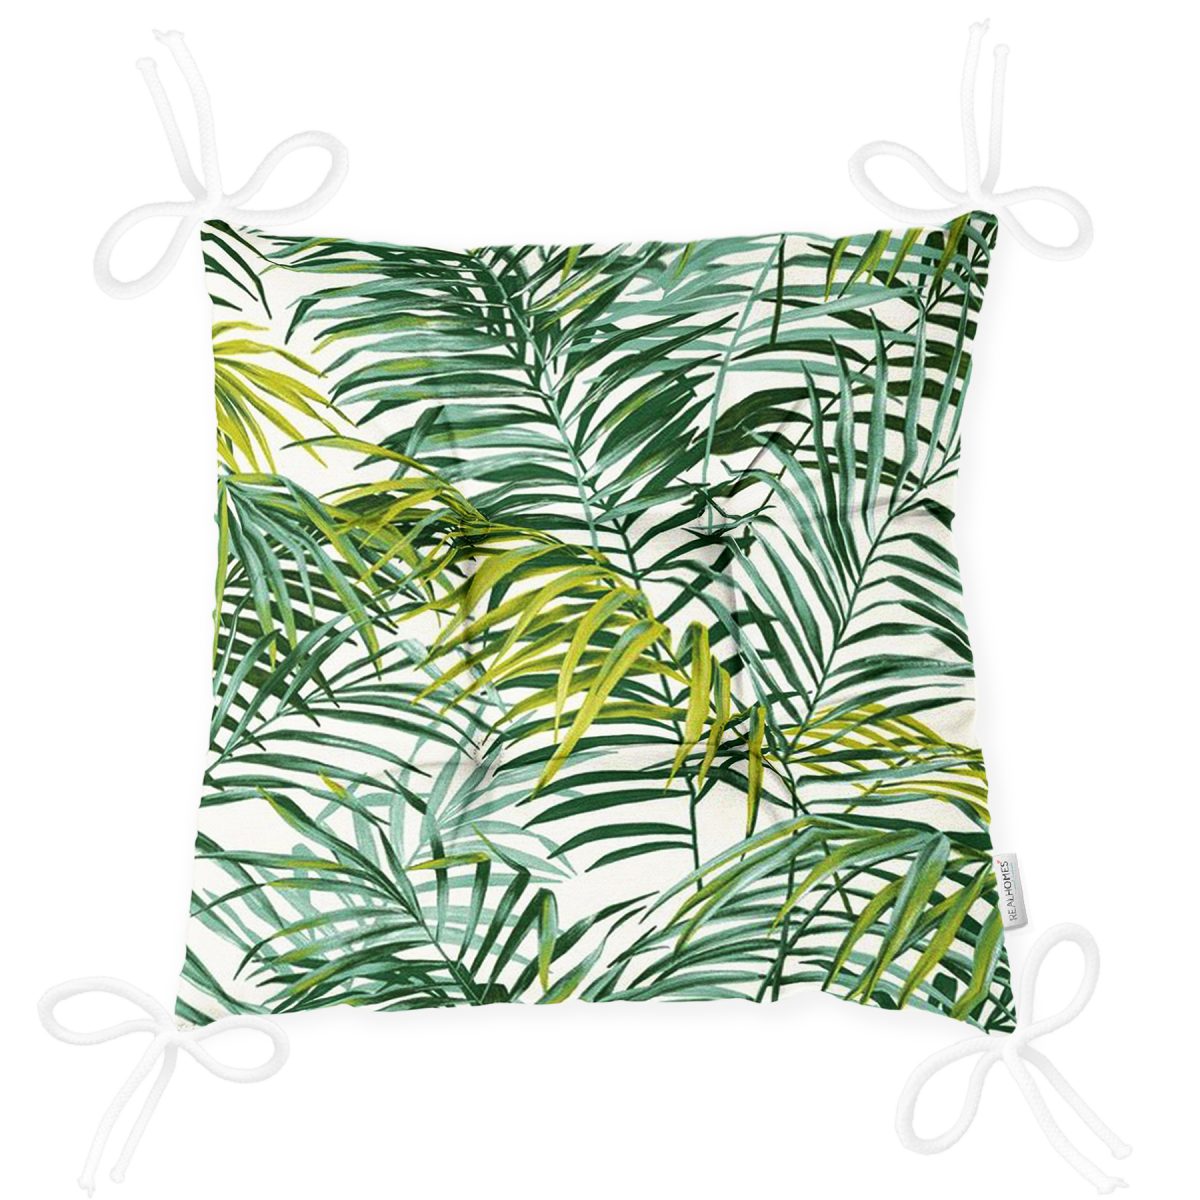 Yeşil Palmiye Yaprakları Özel Tasarımlı Dekoratif Pofuduk Sandalye Minderi Realhomes